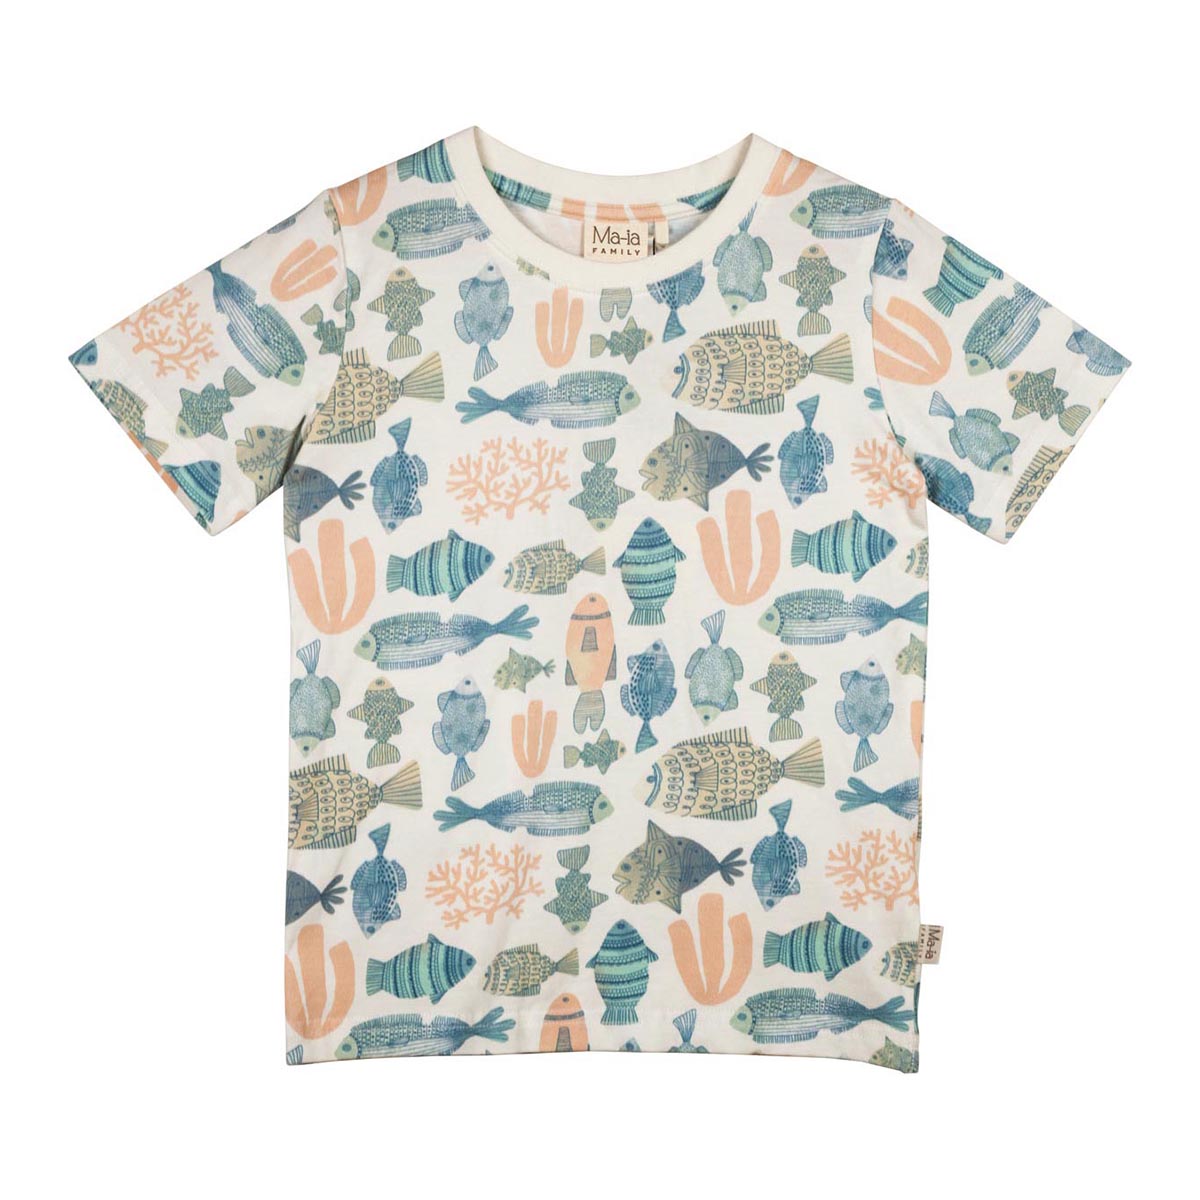 Fishes T-Shirt, white